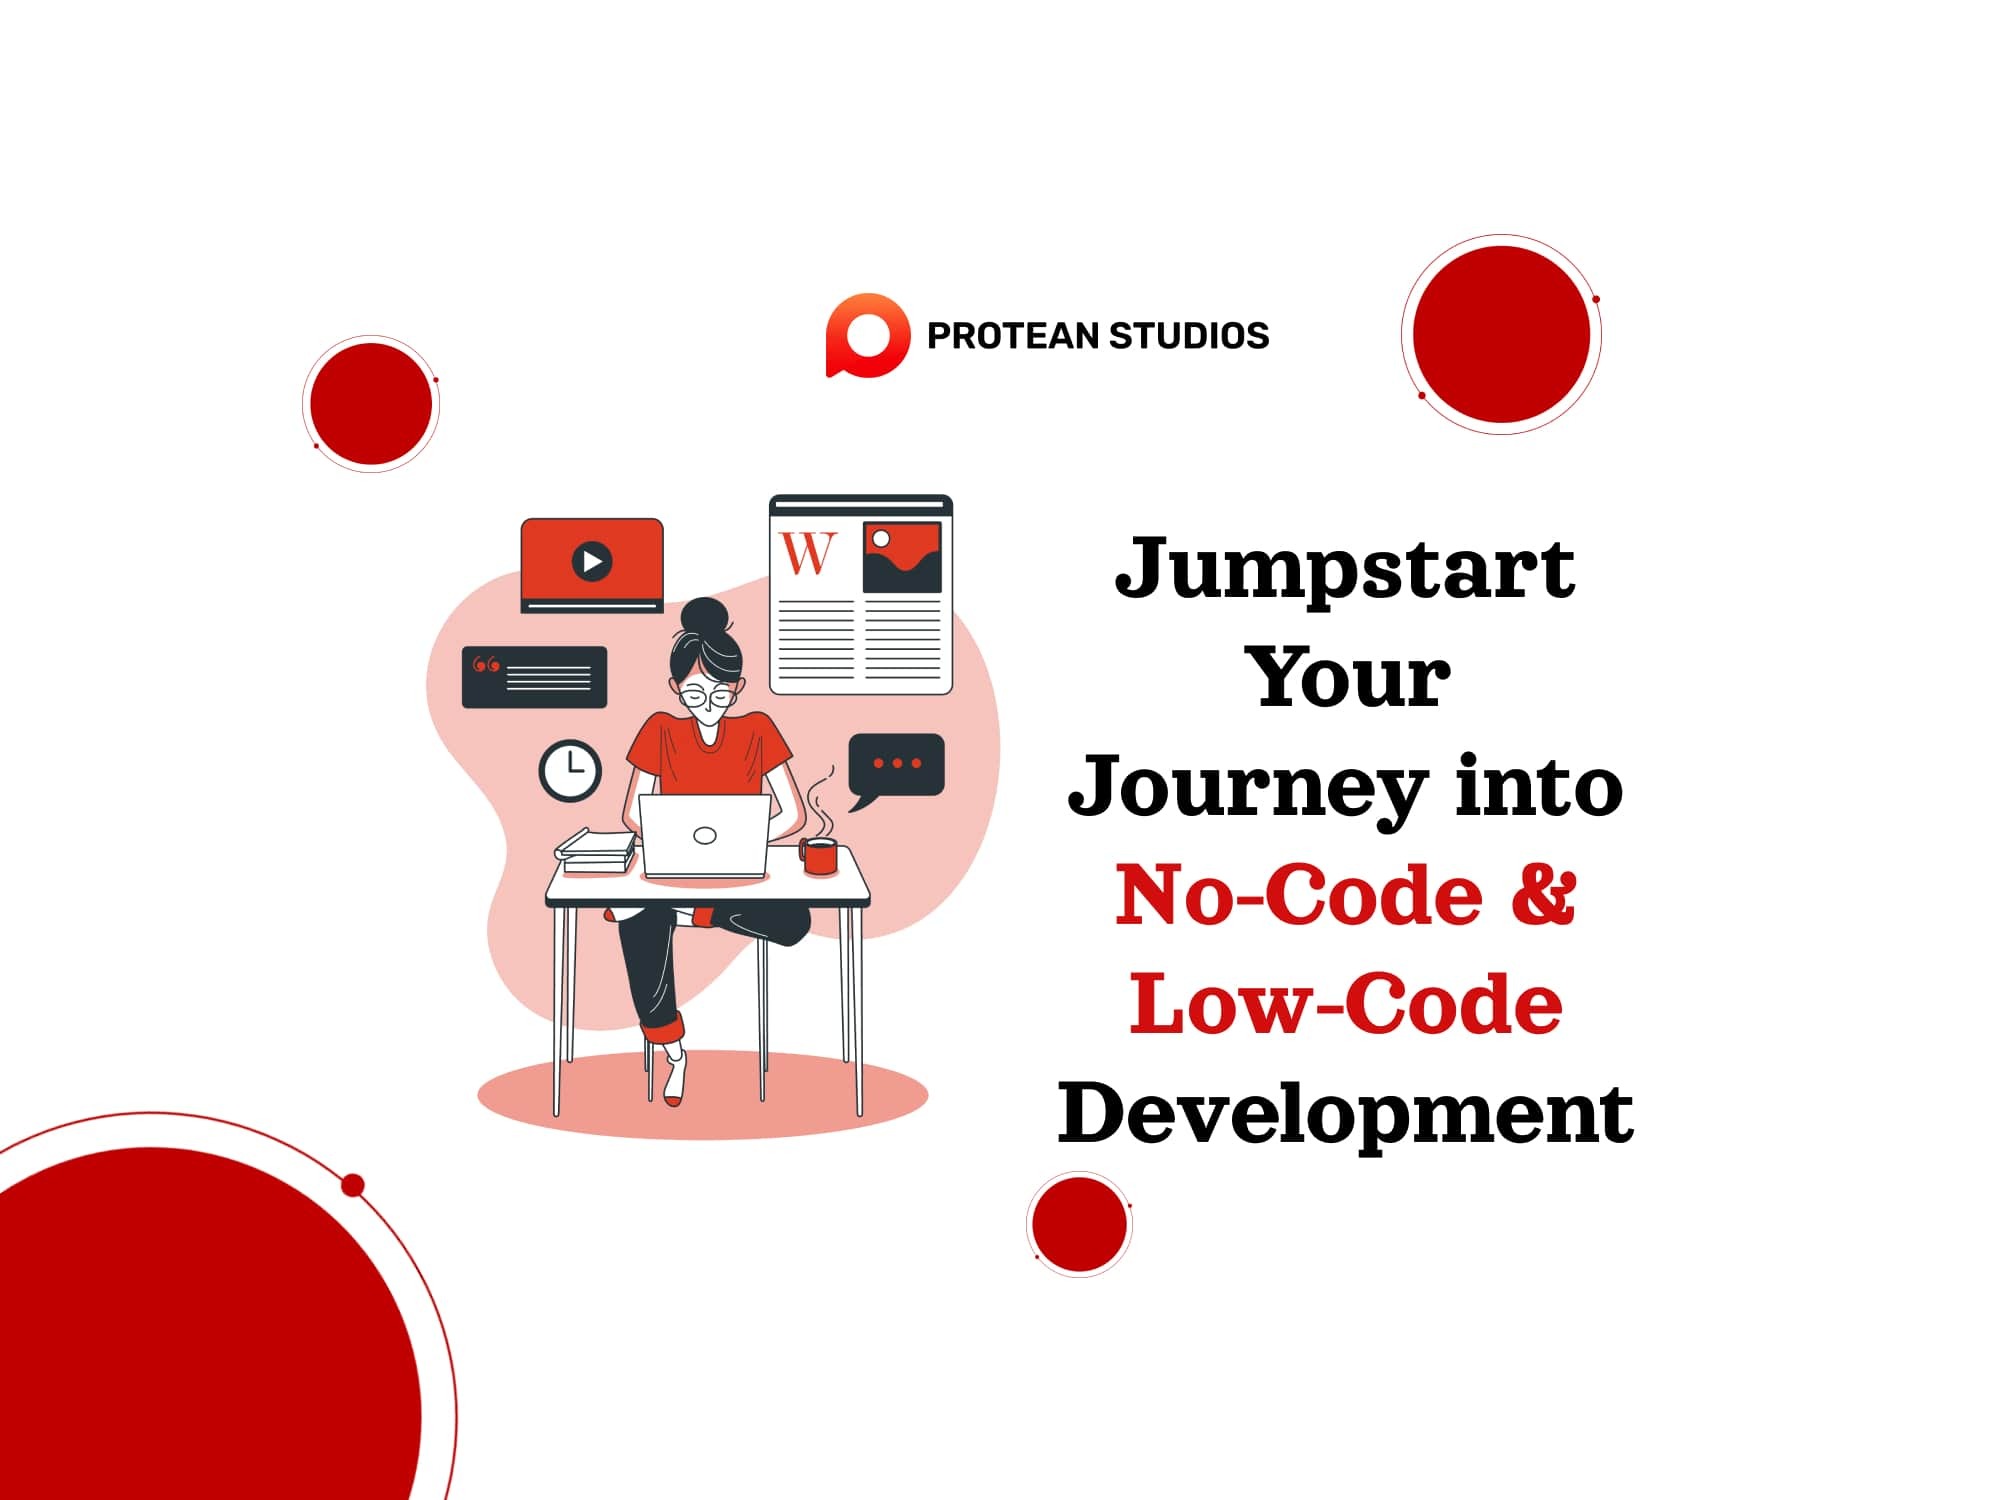 Jumpstart Your Journey into No-Code & Low-Code Development